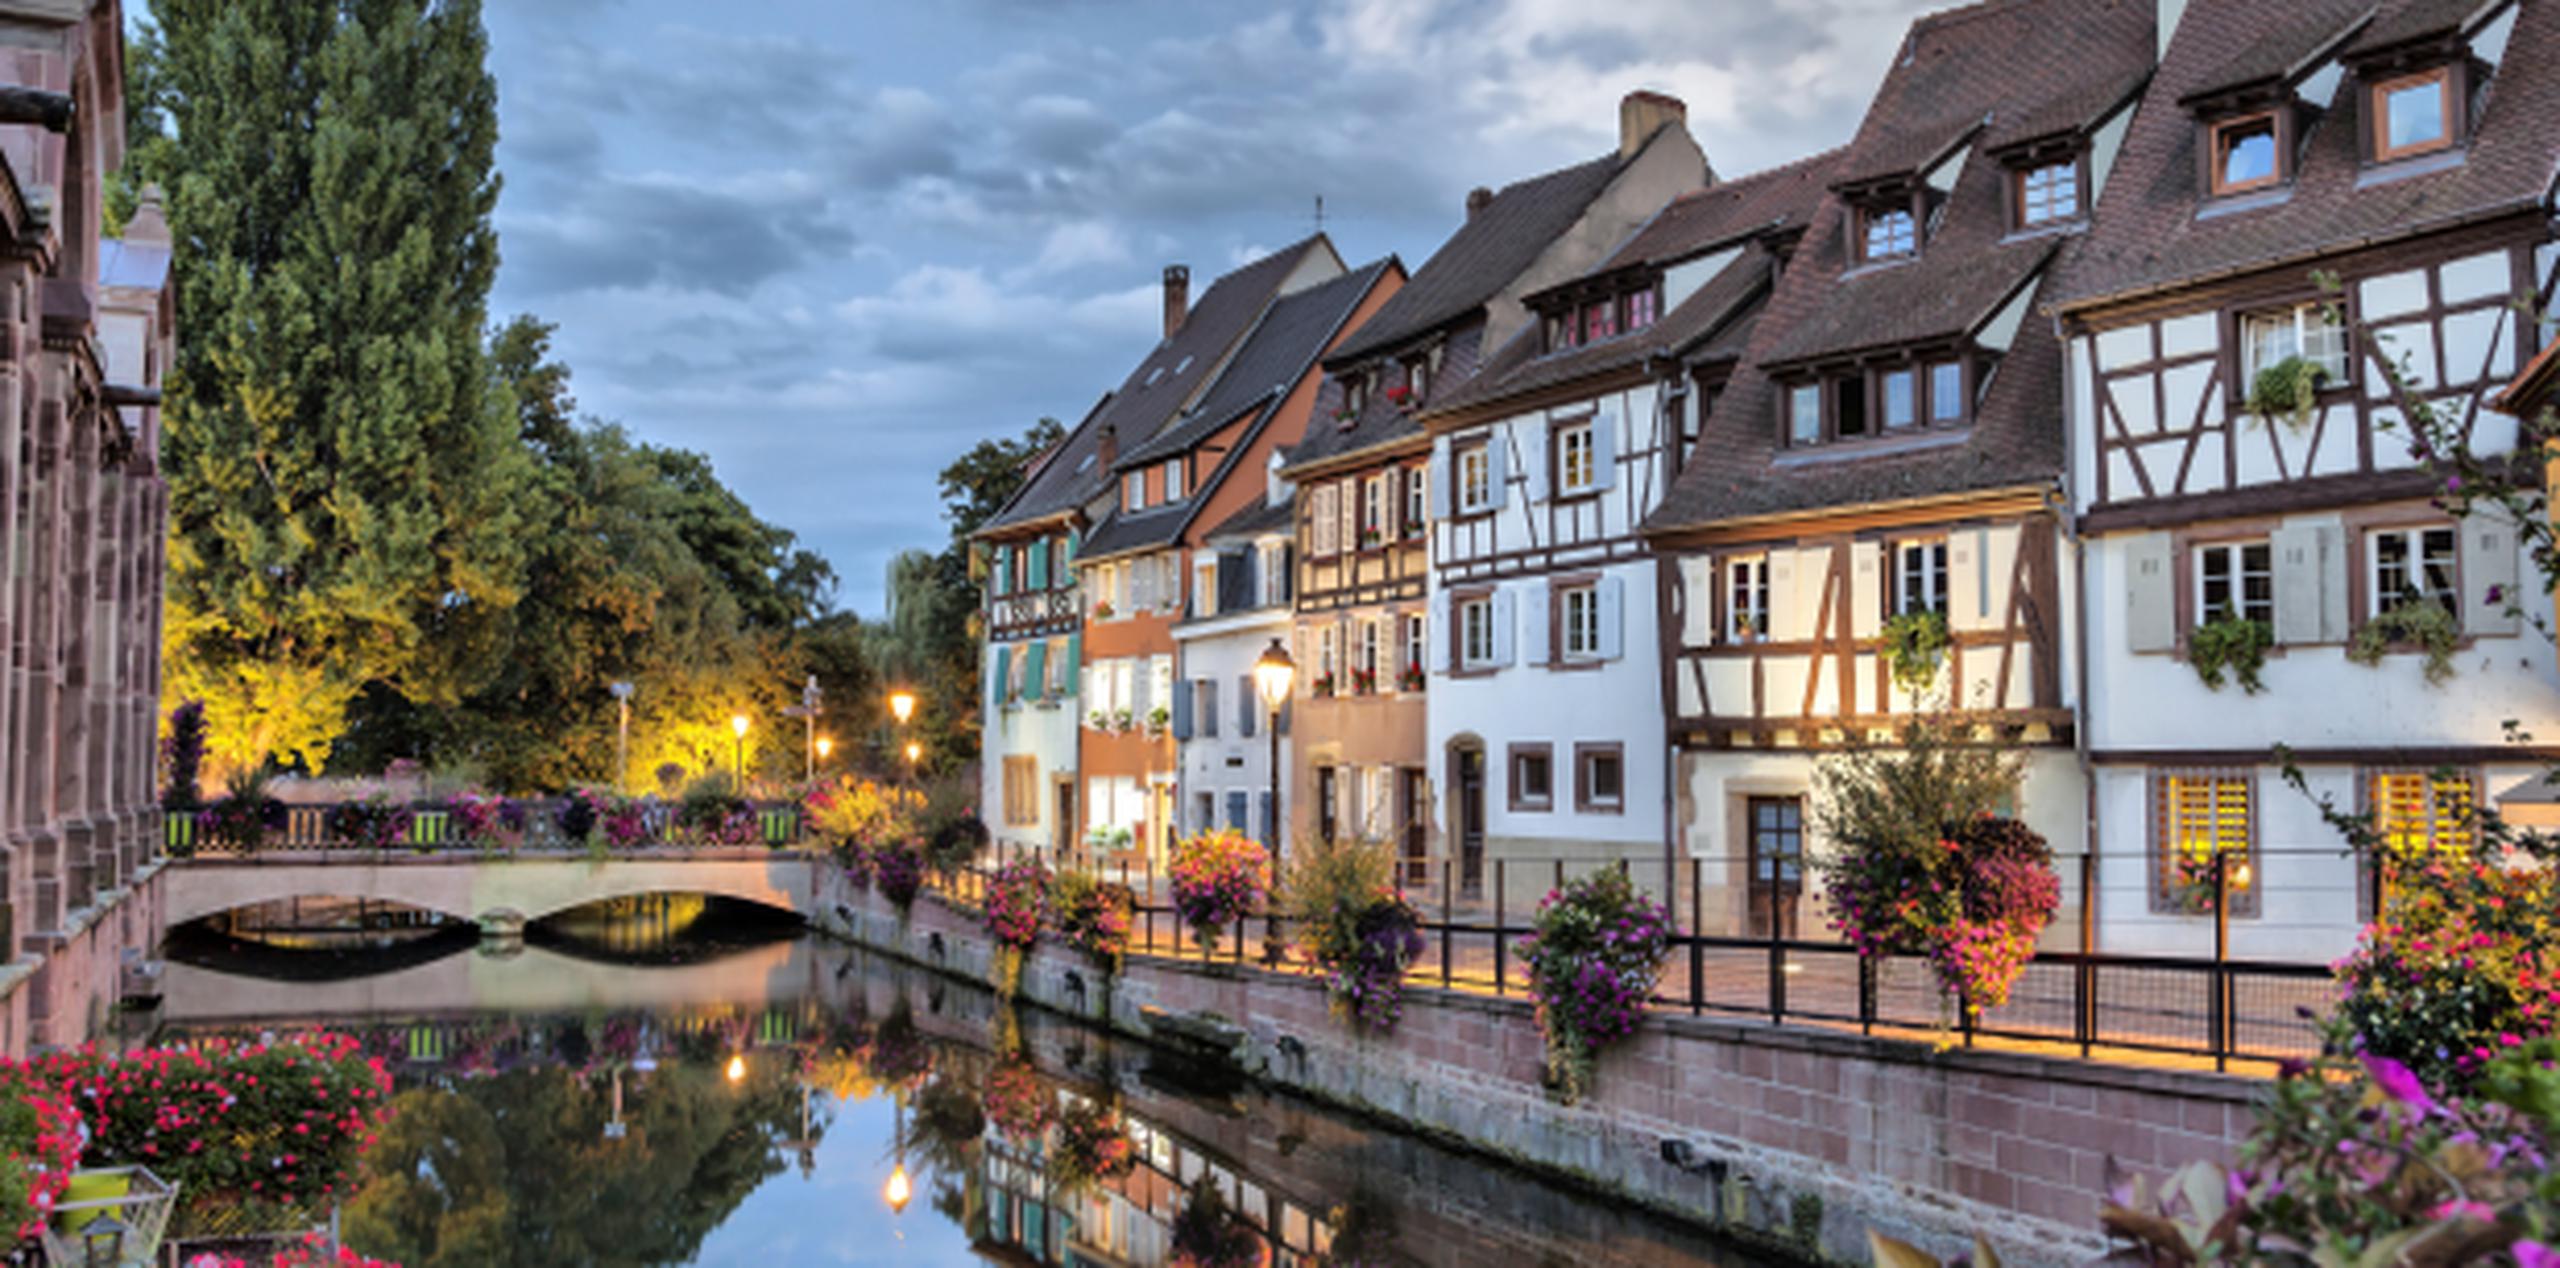 La belleza de Alsacia está en sus castillos medievales y pintorescas calles y casas. (Shutterstock)